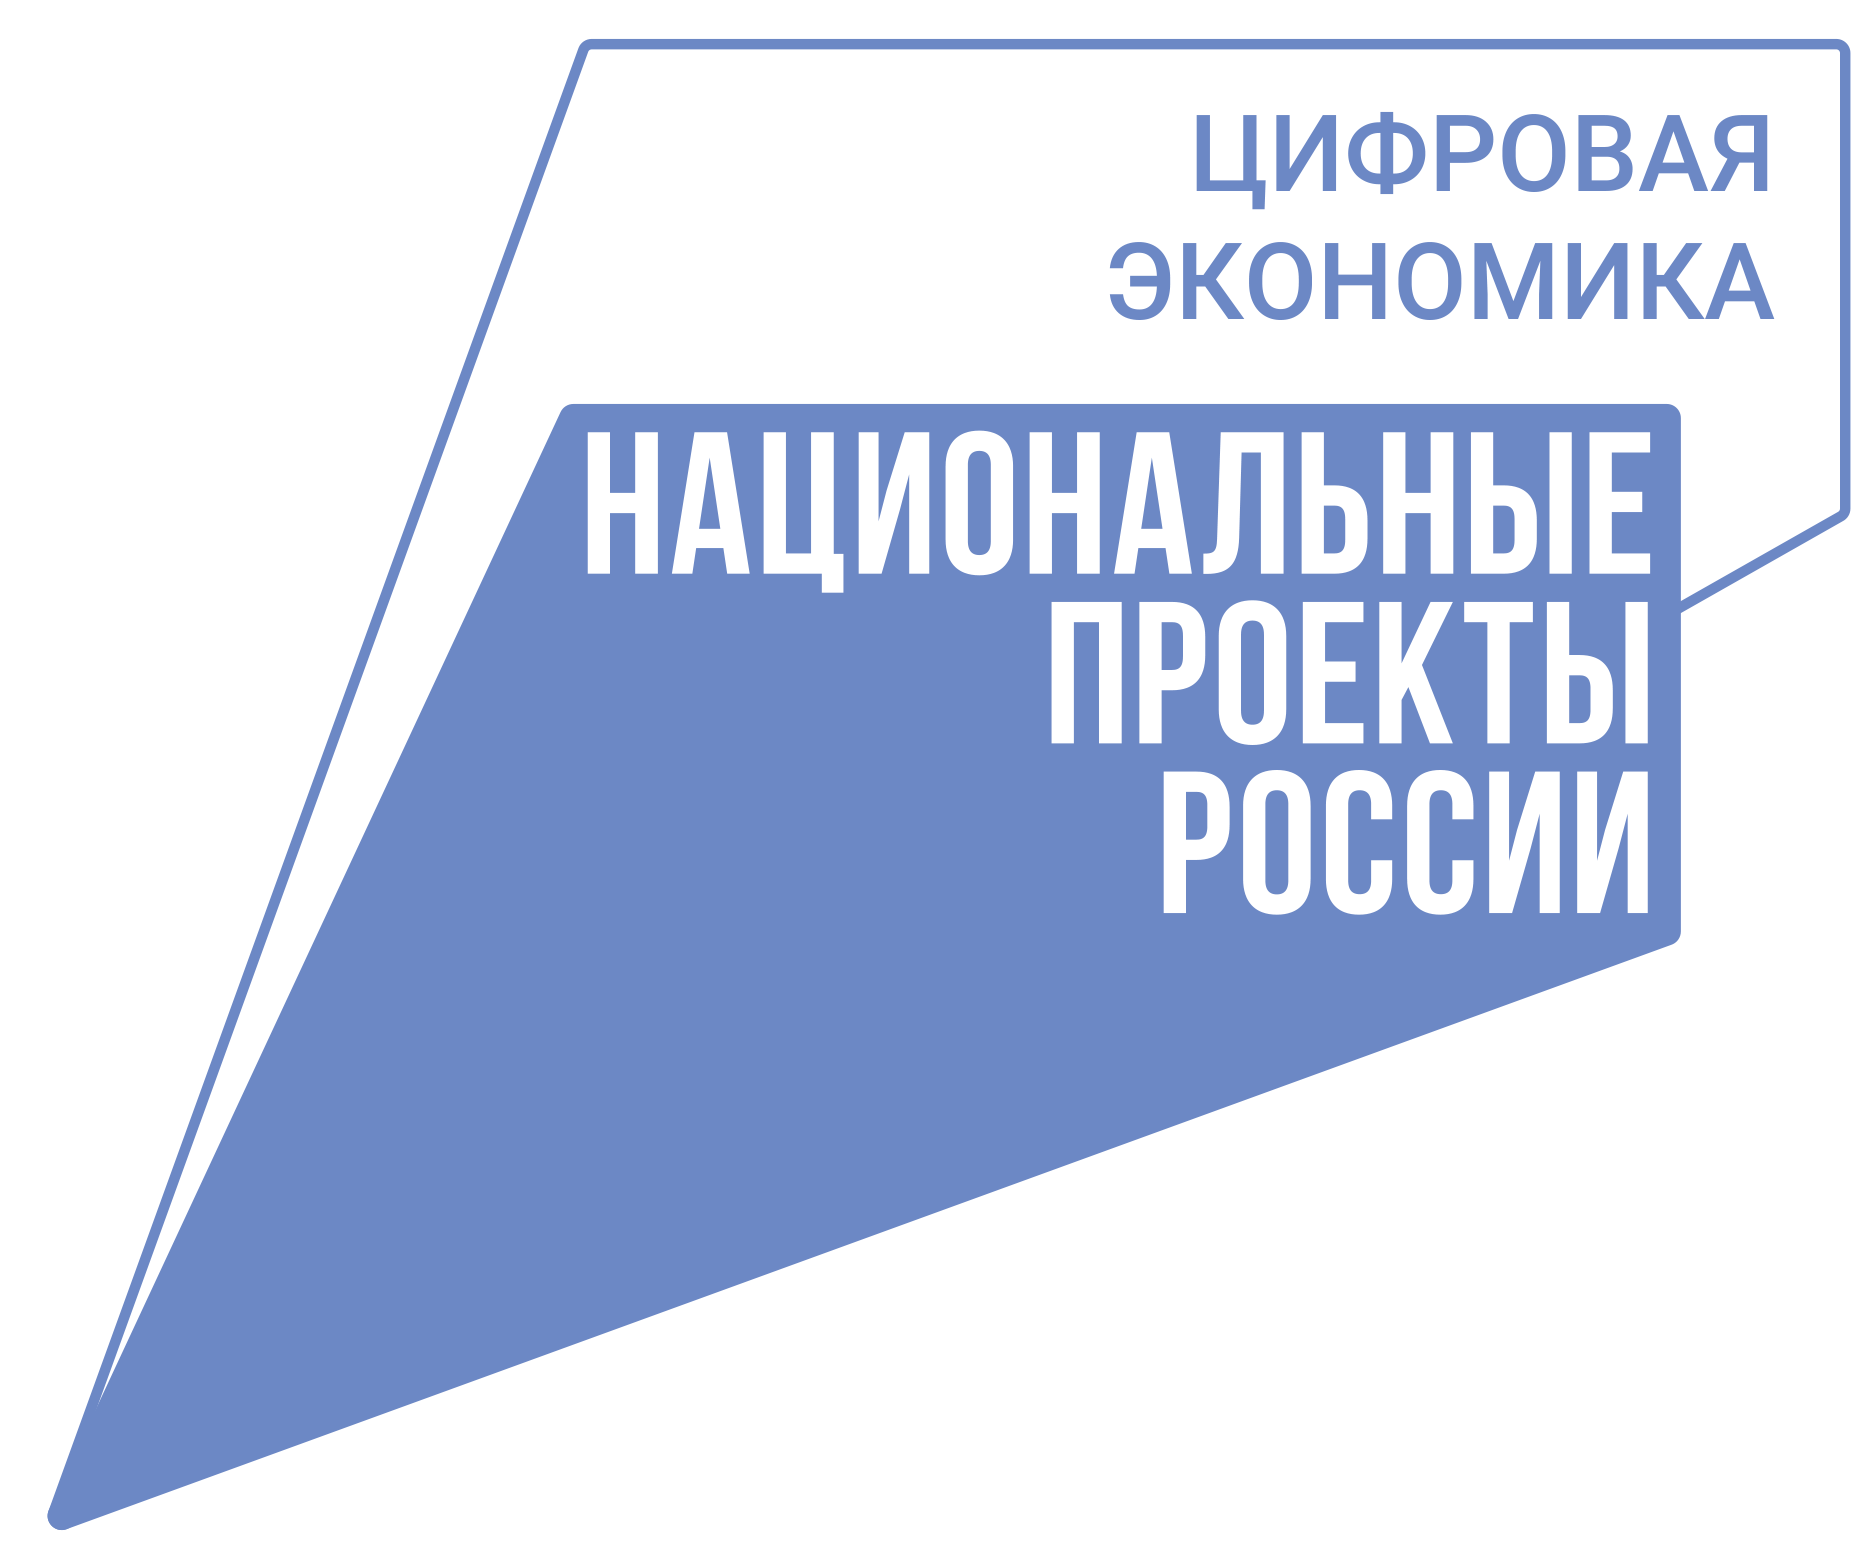 Реализация национального проекта «Цифровая экономика» в МО «Сенгилеевский район» в 2020-2023 годах.